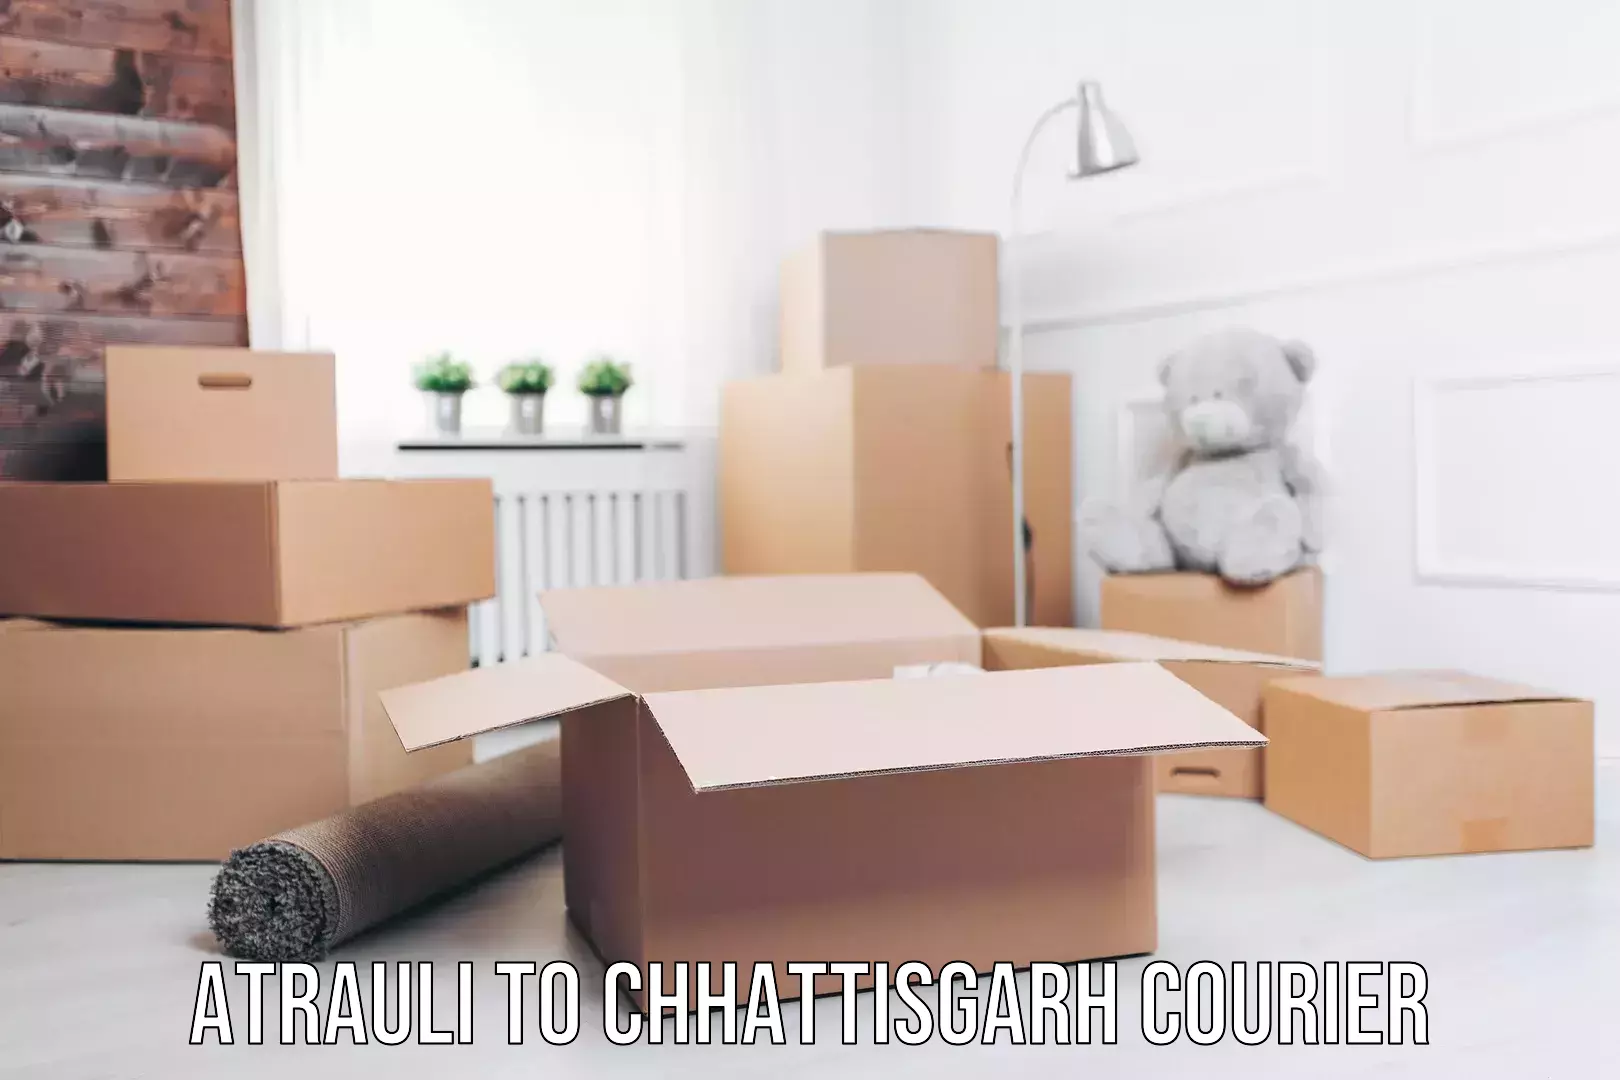 Courier service comparison Atrauli to Chhattisgarh